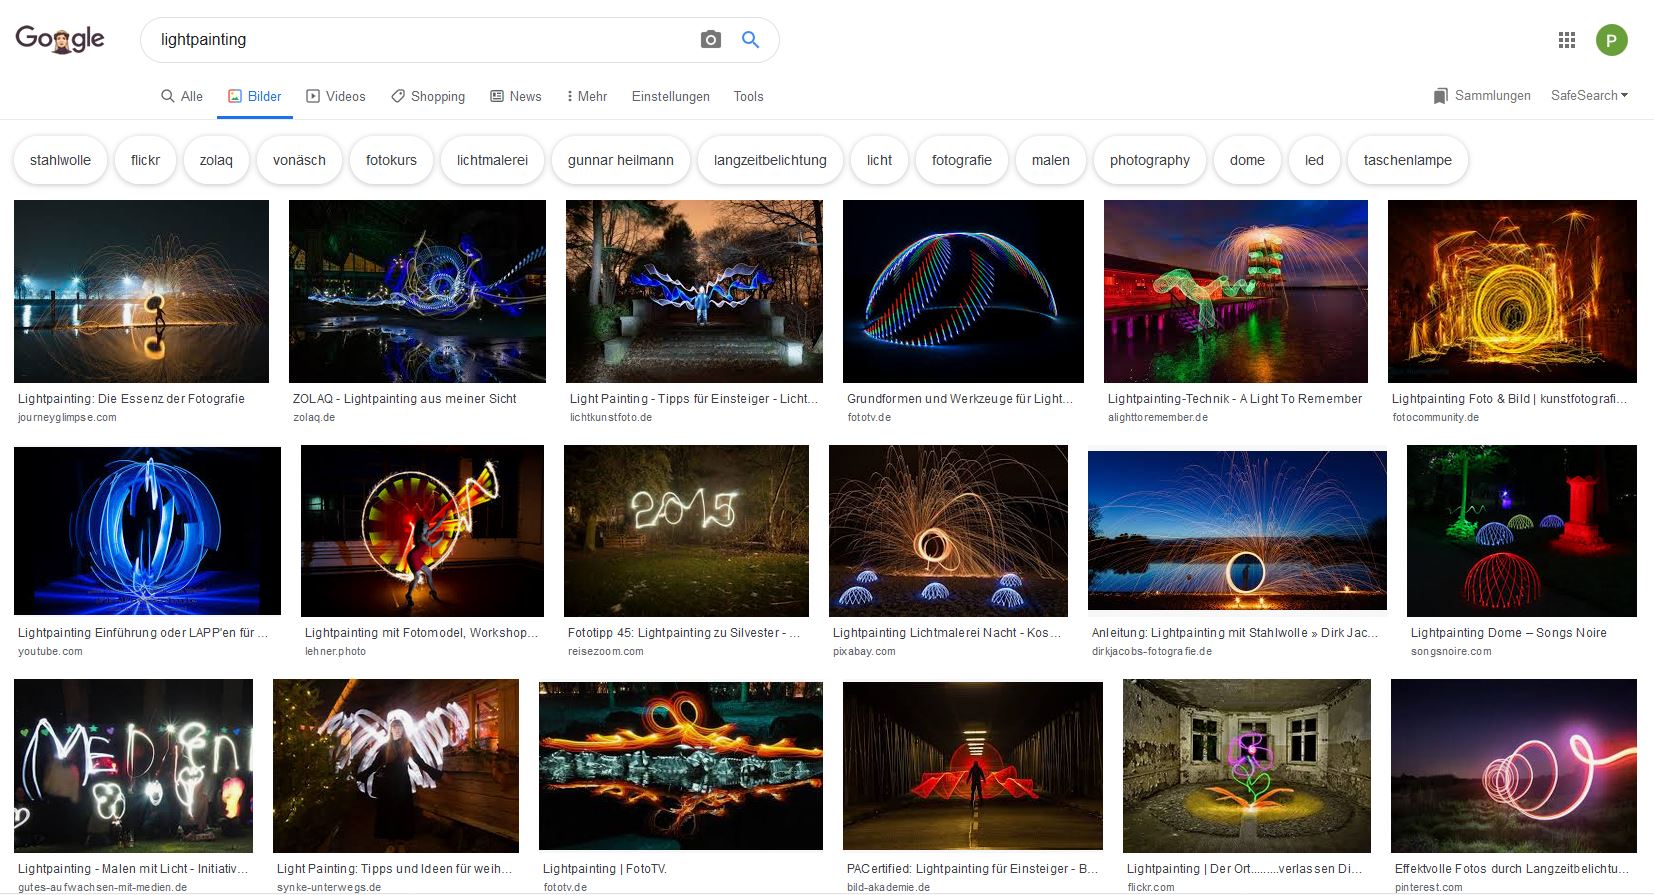 Suchergebnisse in der Google Bilder Suche mit dem Begriff Light Painting.